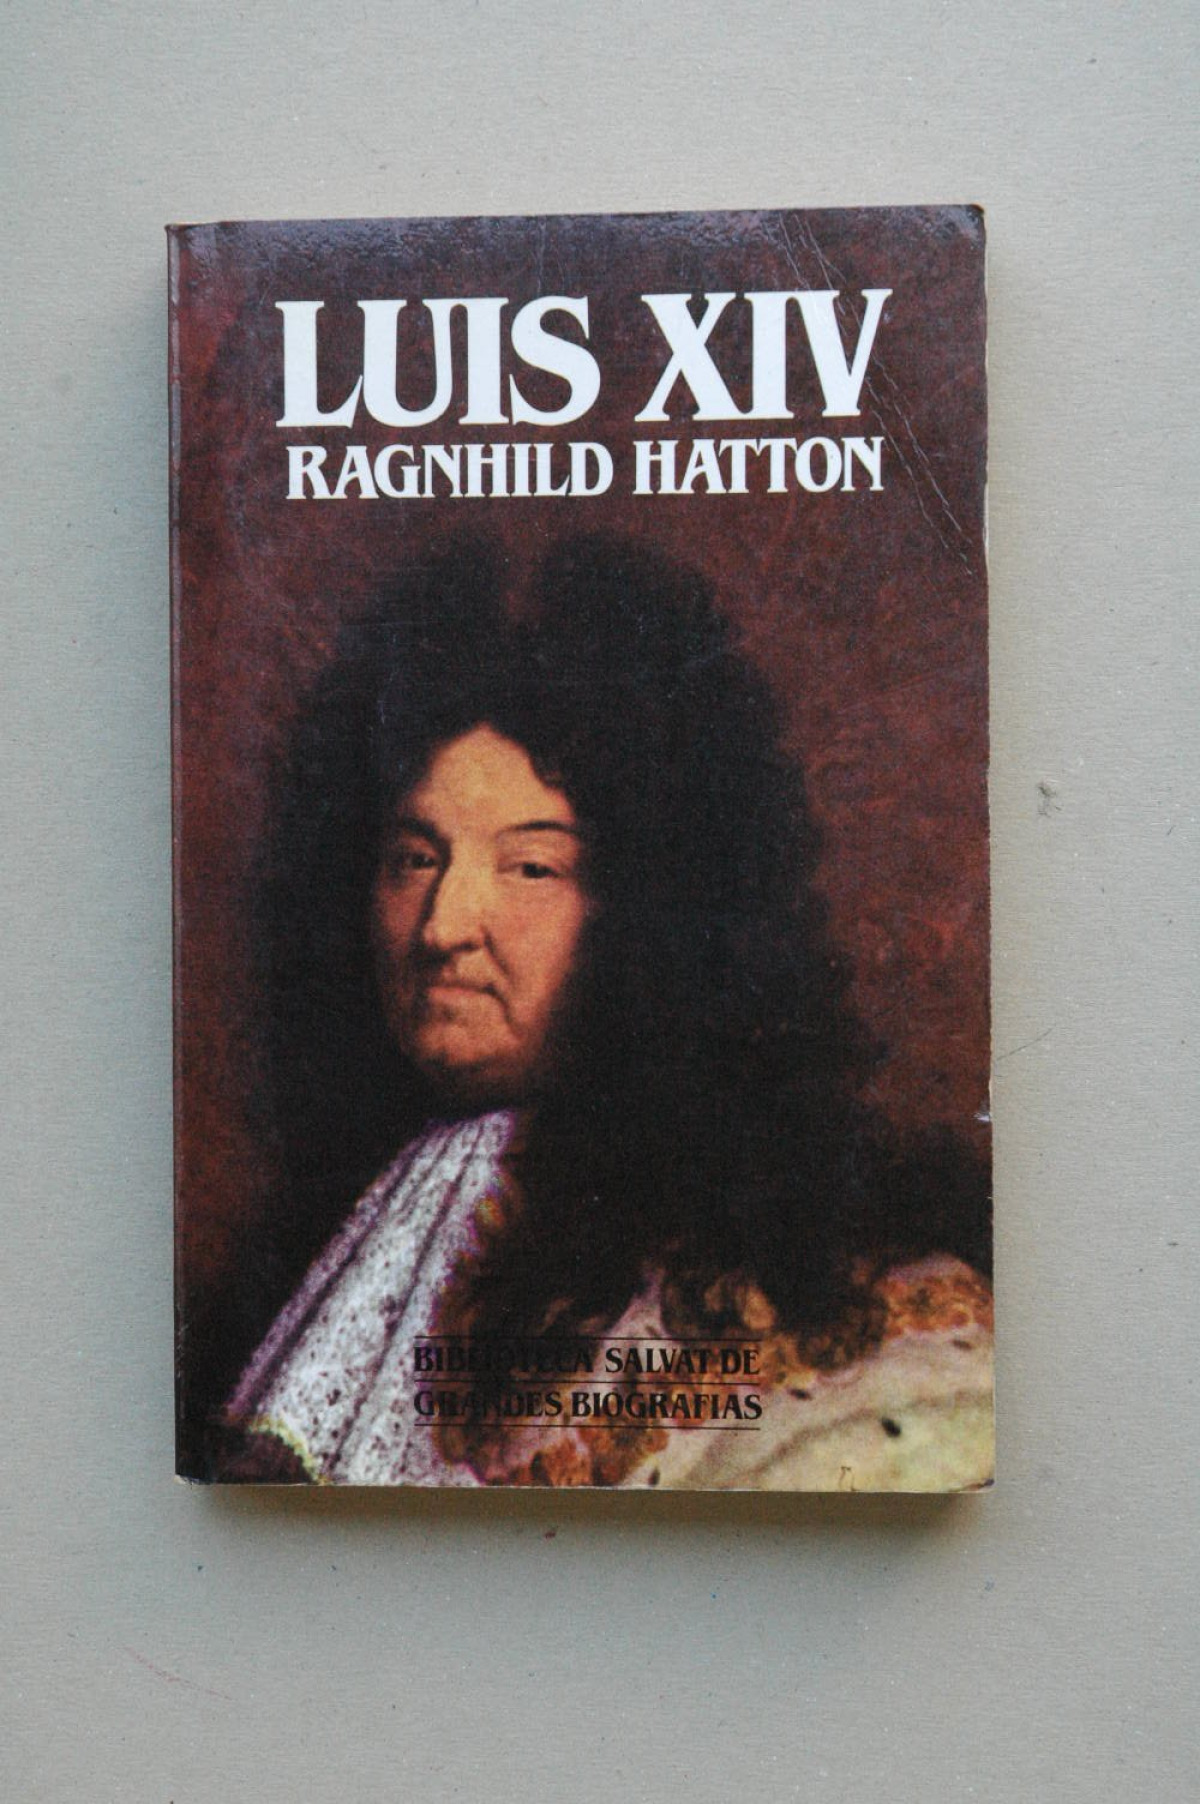 Luis xiv - Hatton, Ragnhild